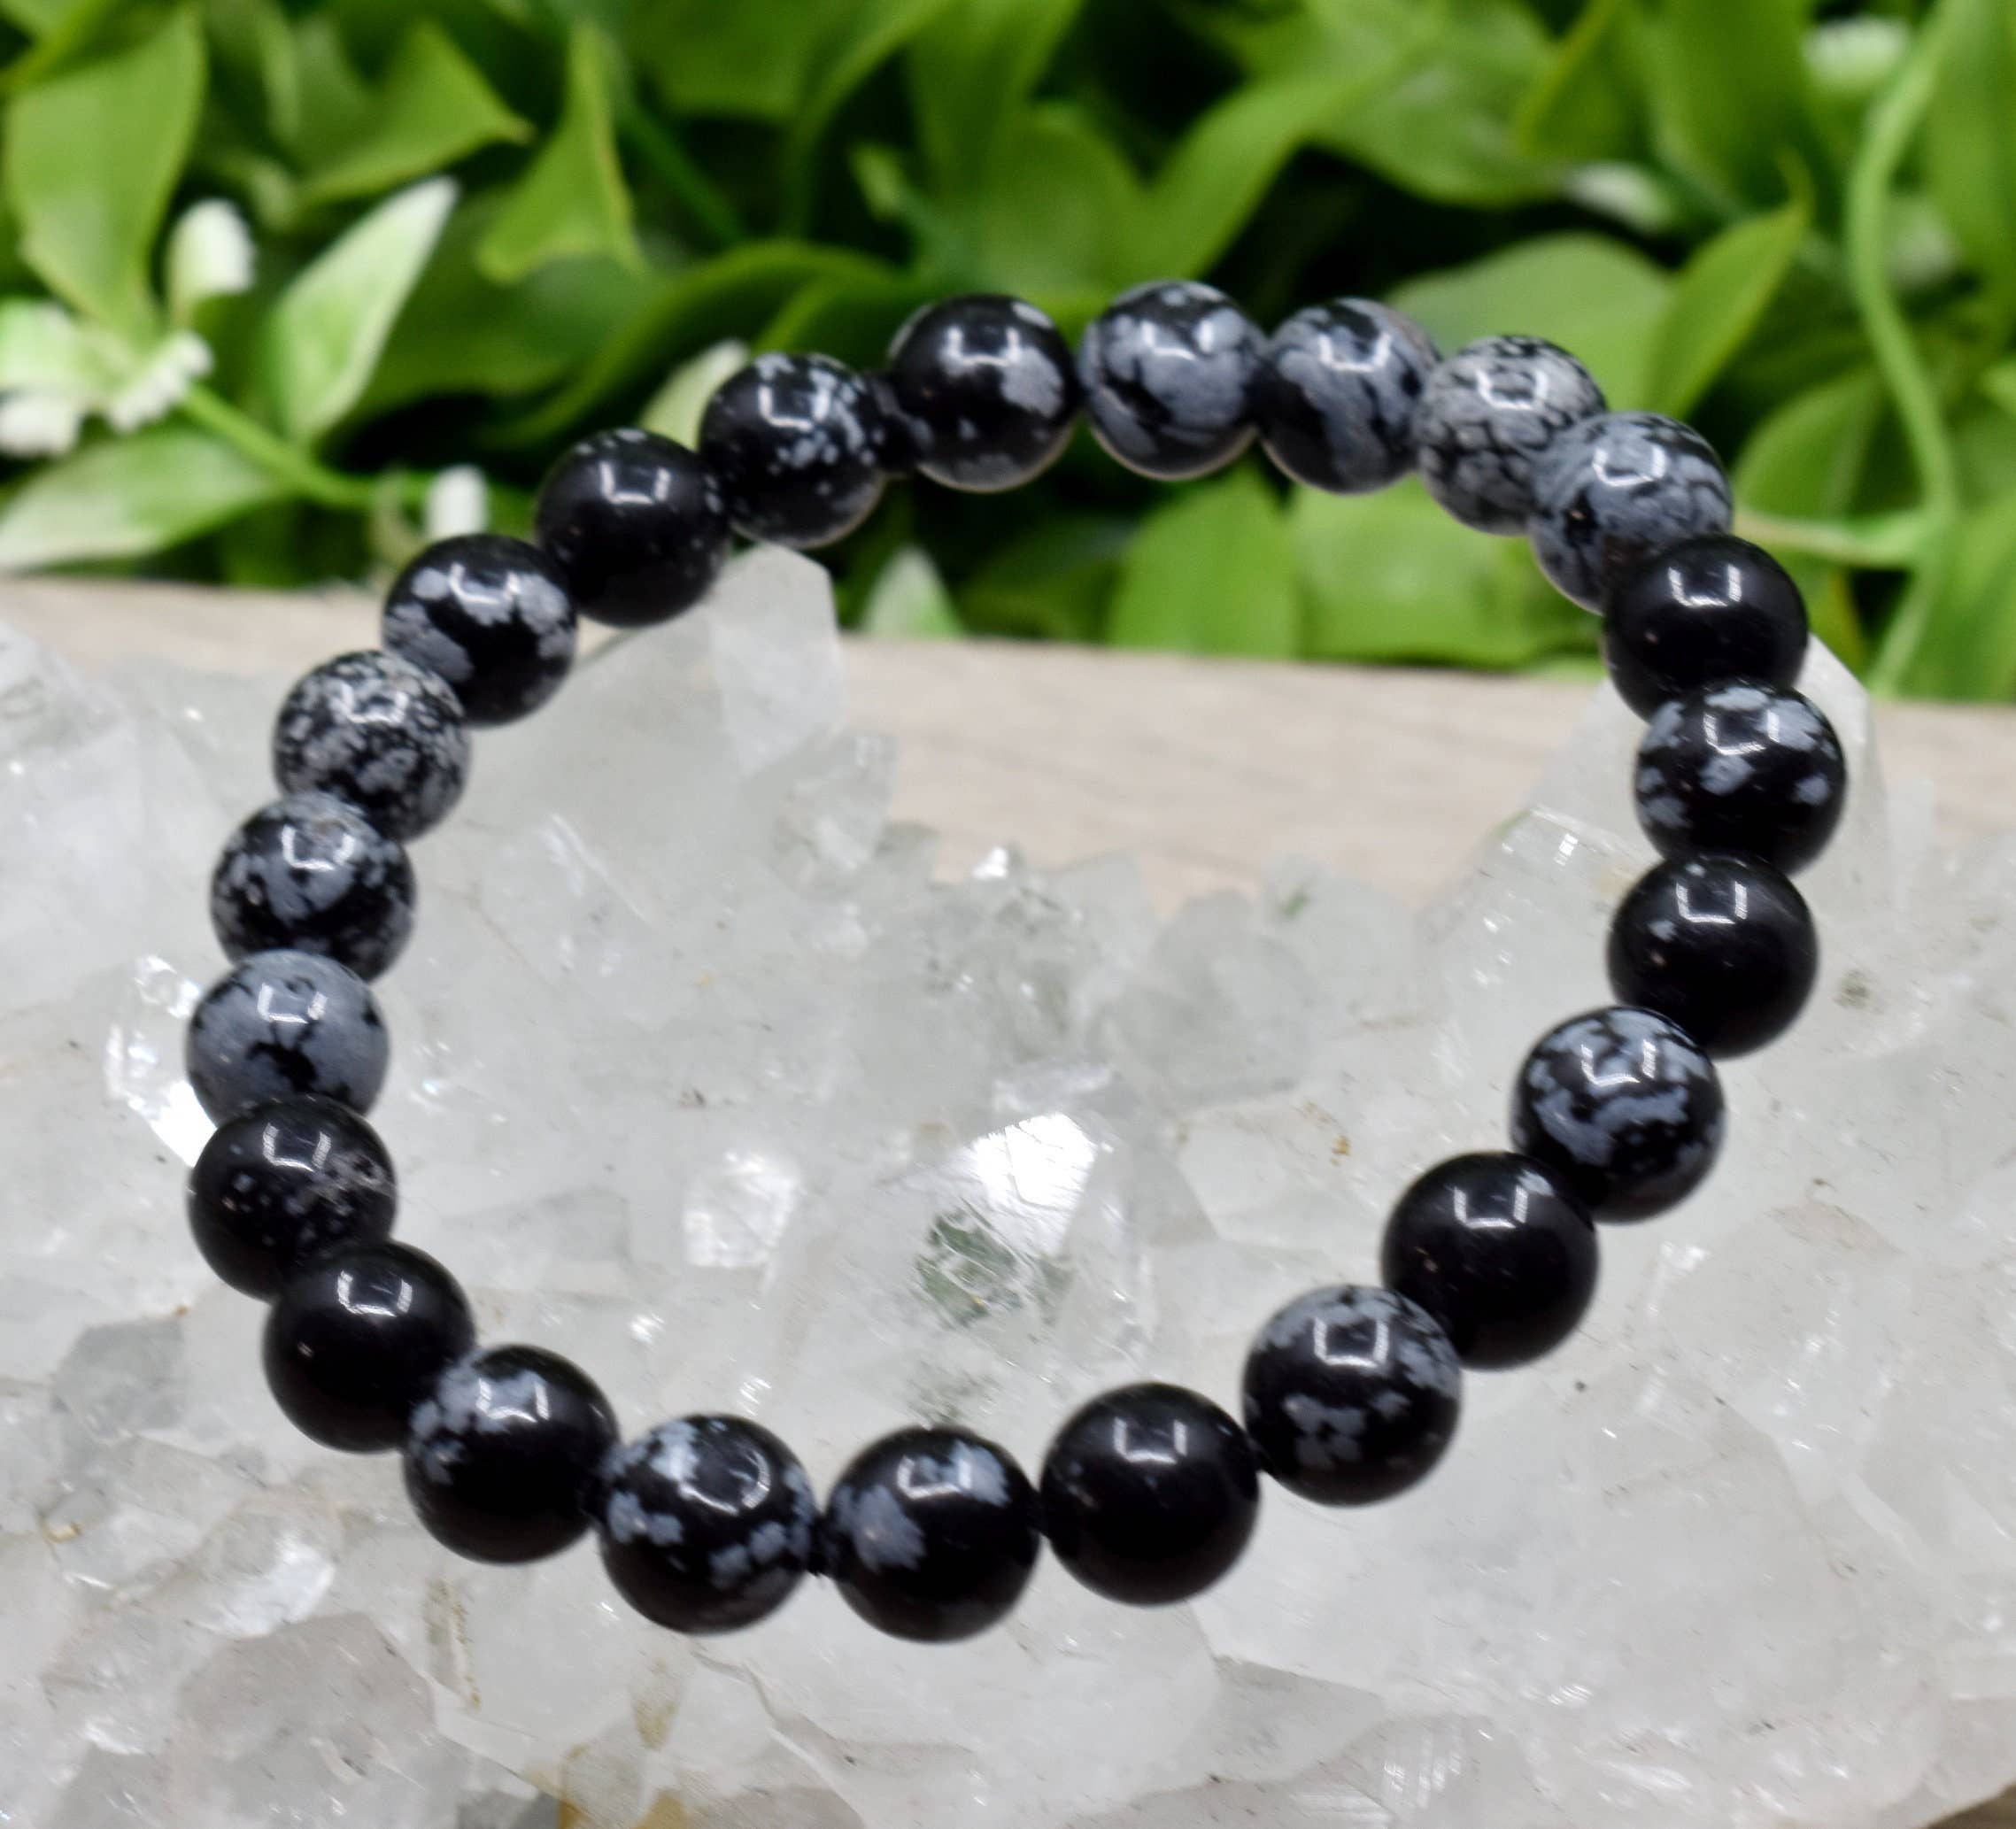 Black Onyx Stone & 7 Chakras Bracelet - Onyx Jewelry - Magic Crystals